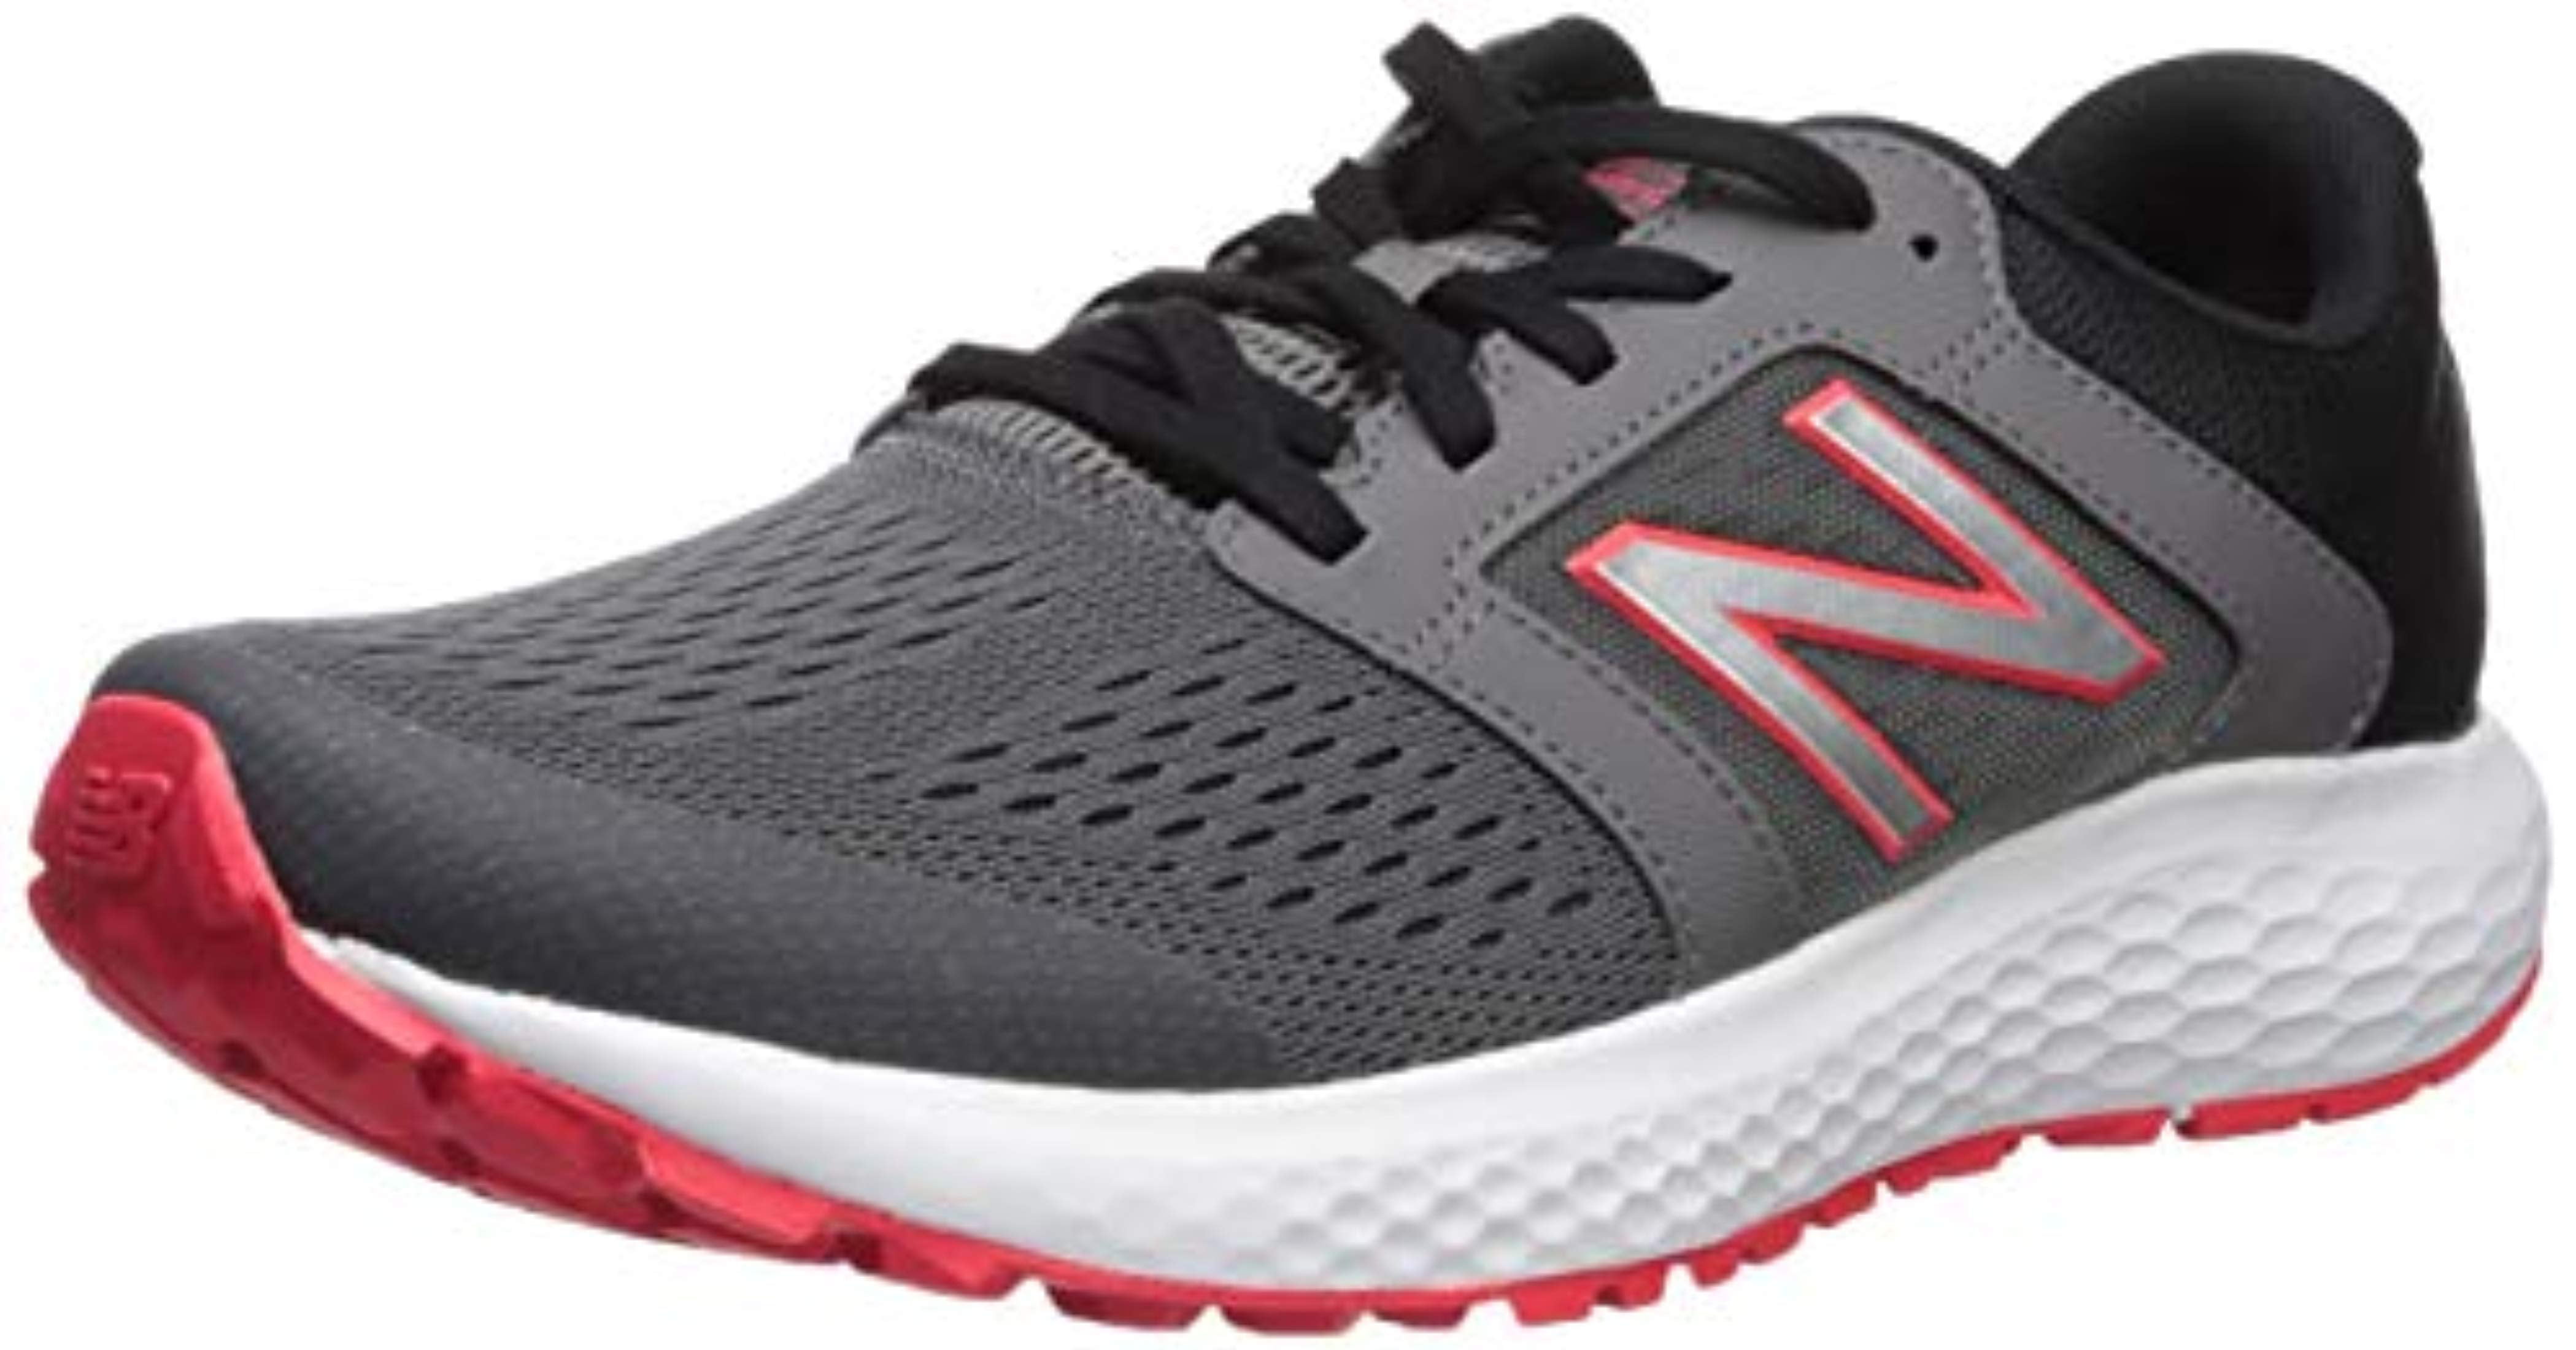 new balance 520 v5 men's running shoes